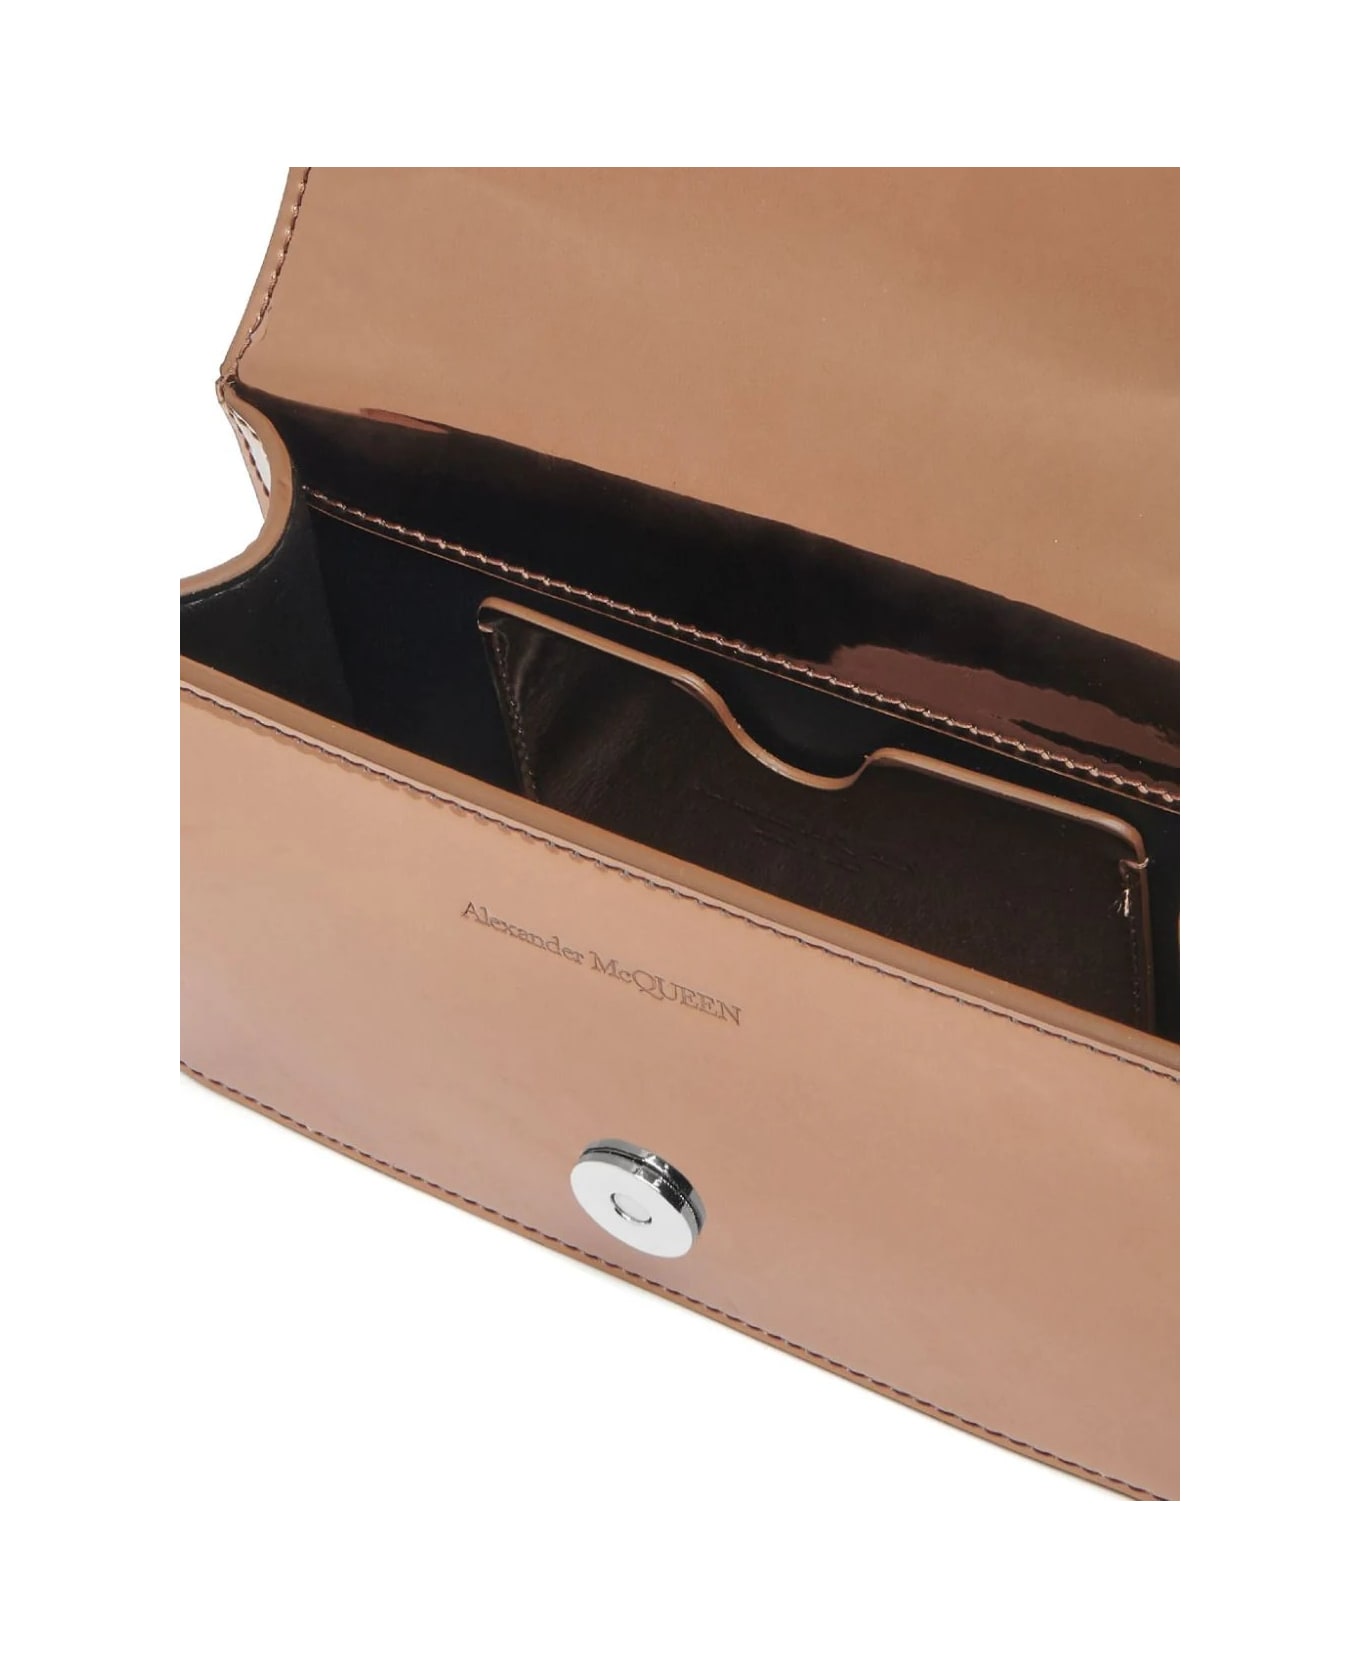 Alexander McQueen Mini Jewelled Satchel Bag In Copper - Copper ショルダーバッグ